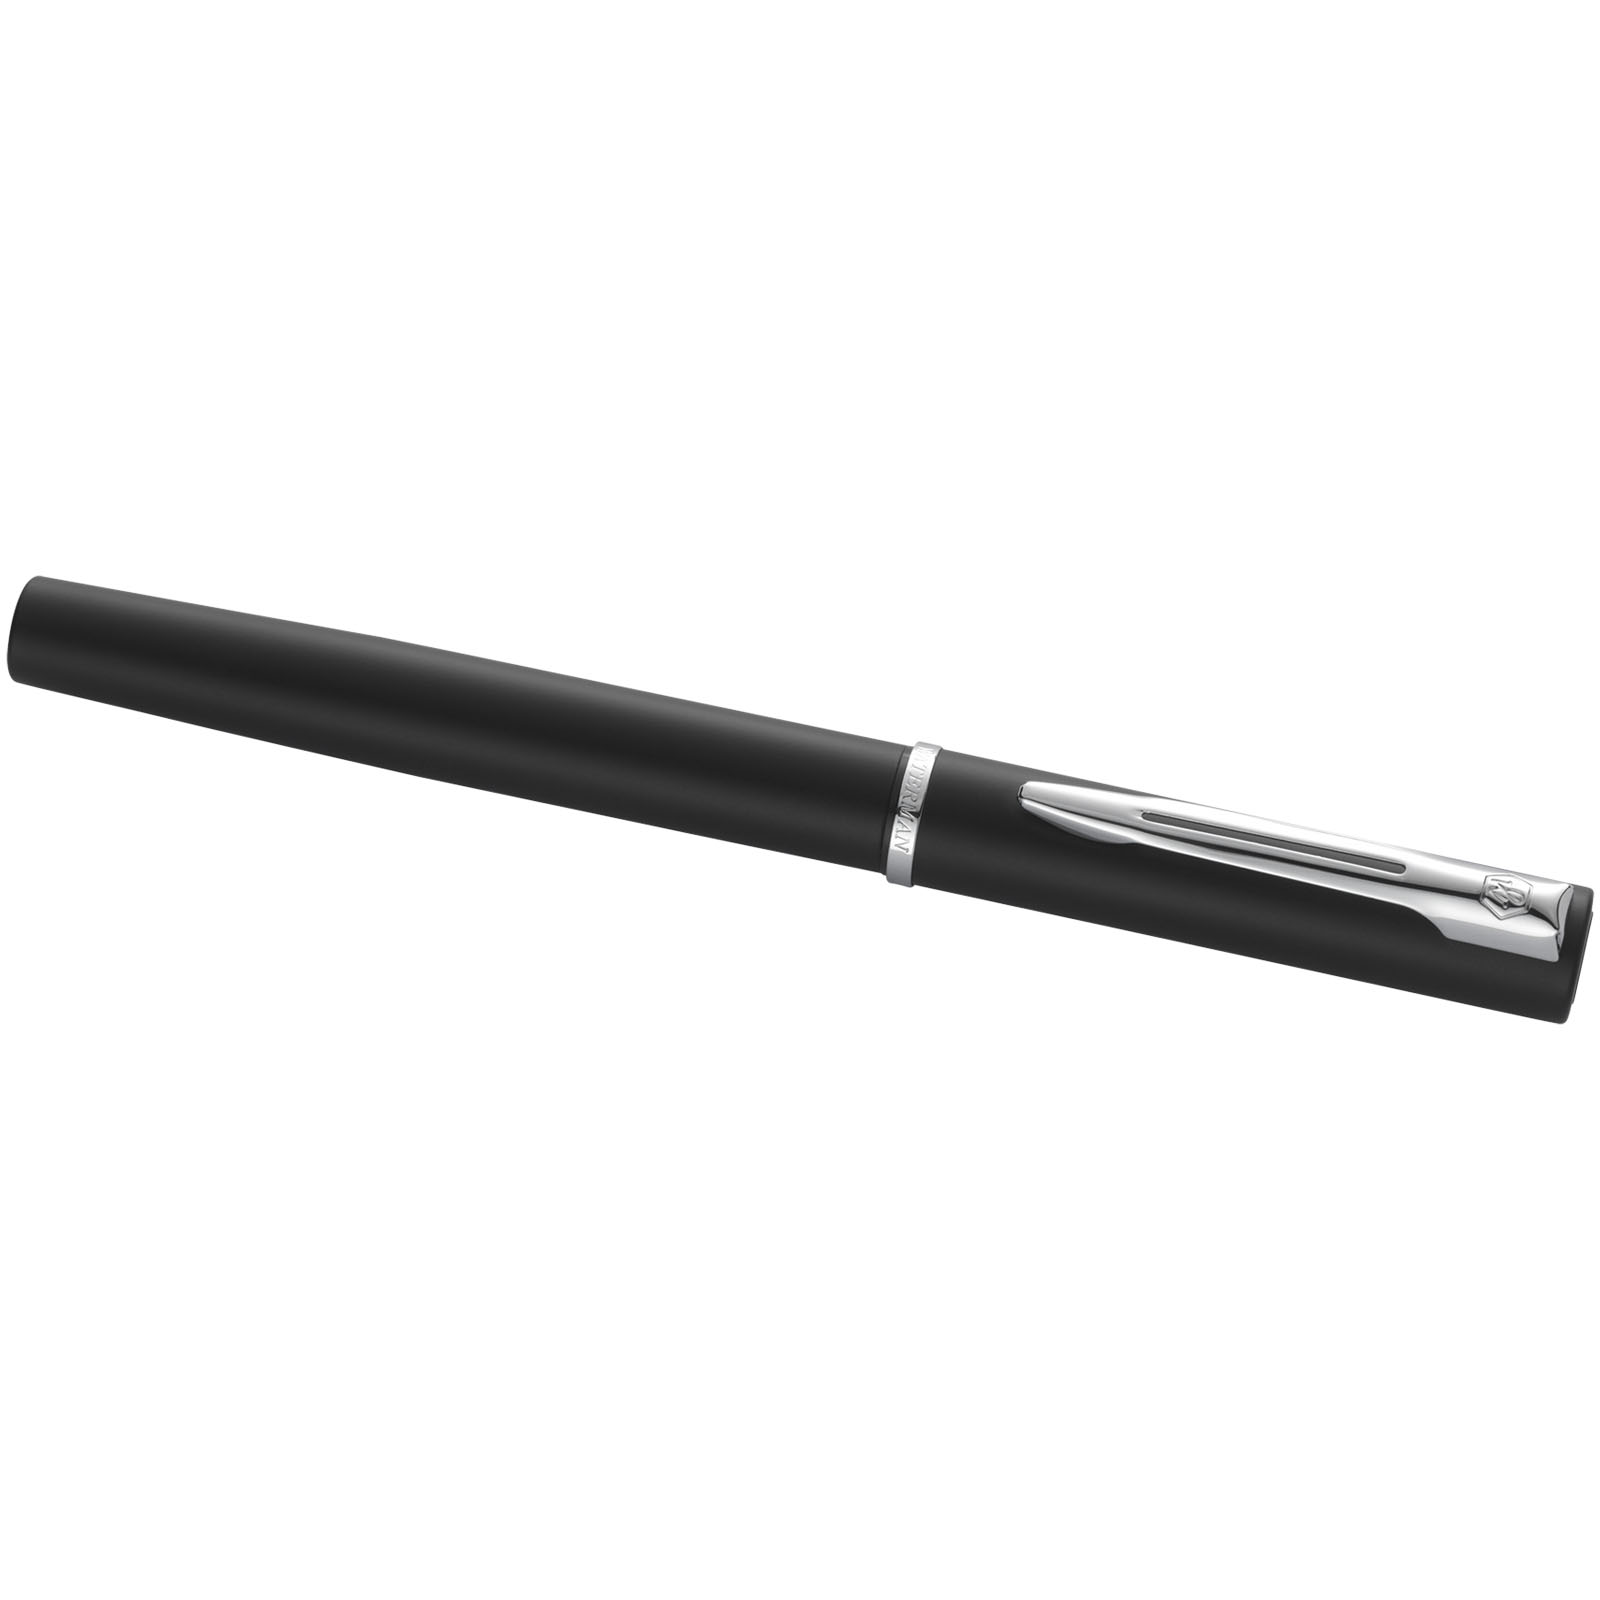 Parure de stylos publicitaires - Parure de stylos bille et roller Allure  - 4